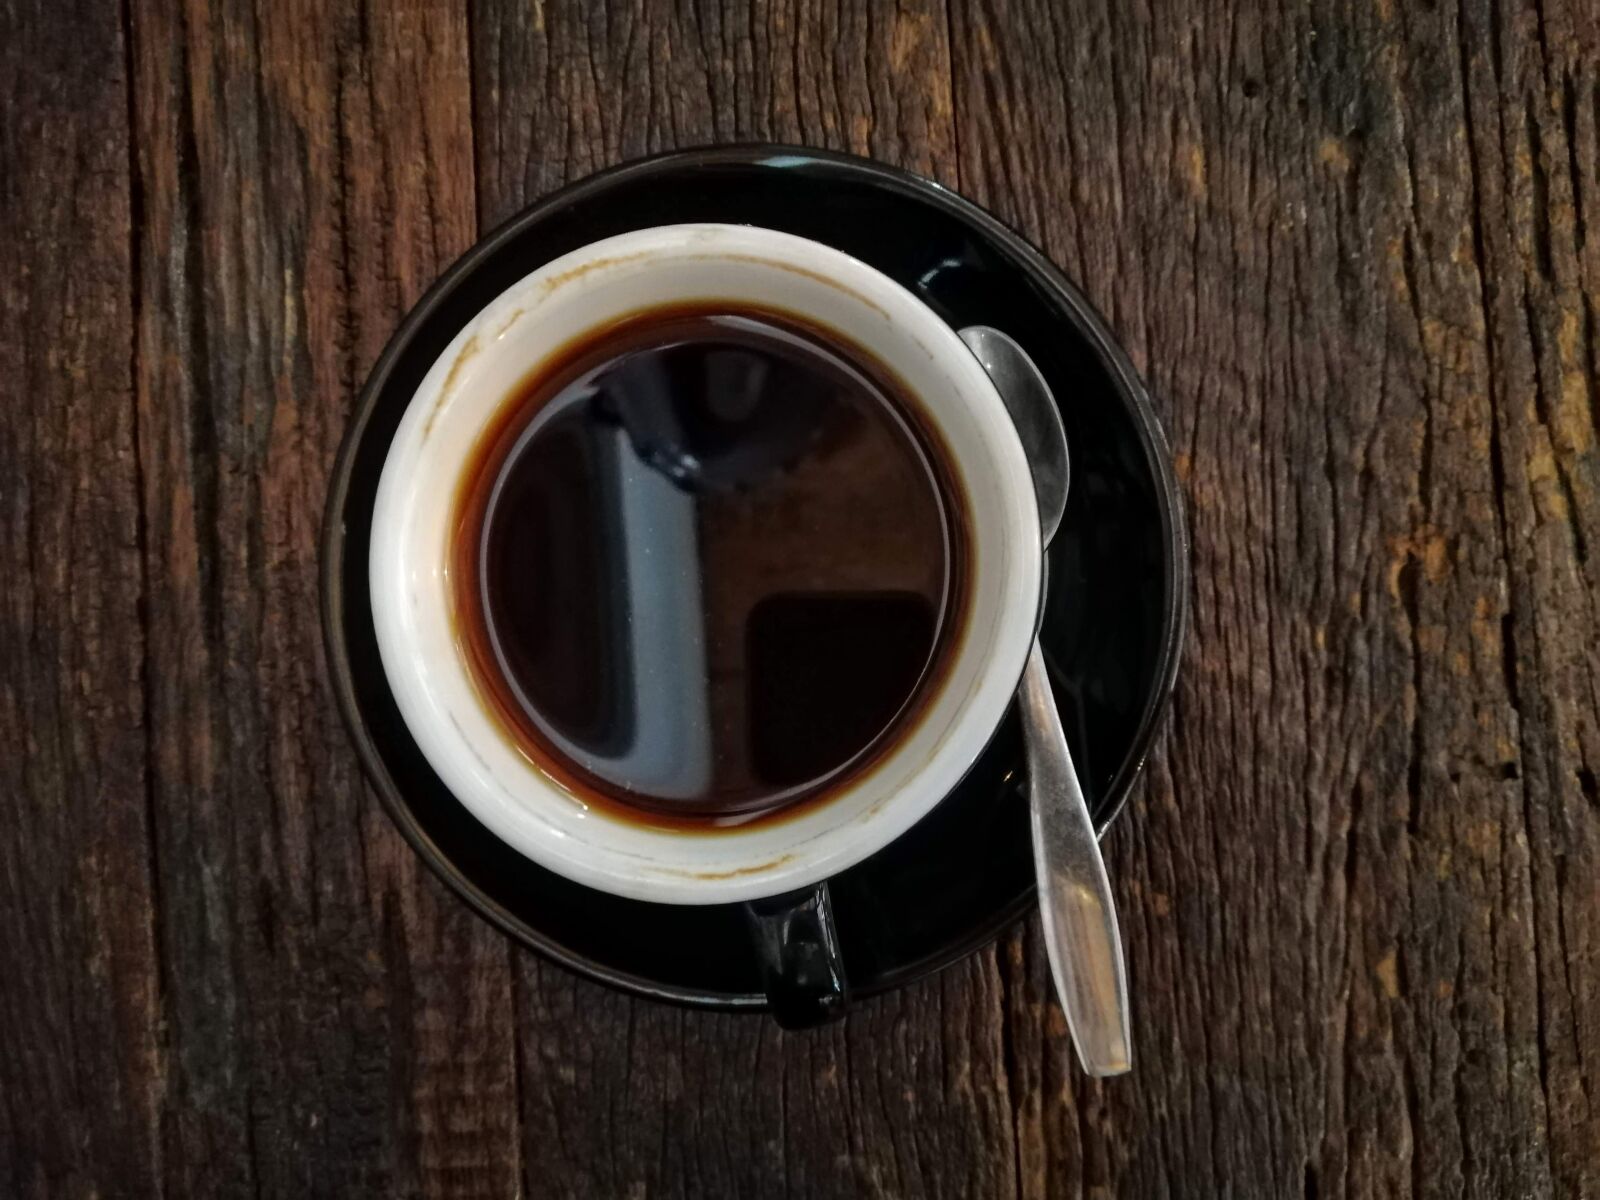 HUAWEI nova 3i sample photo. Coffee, black coffee, caffeine photography